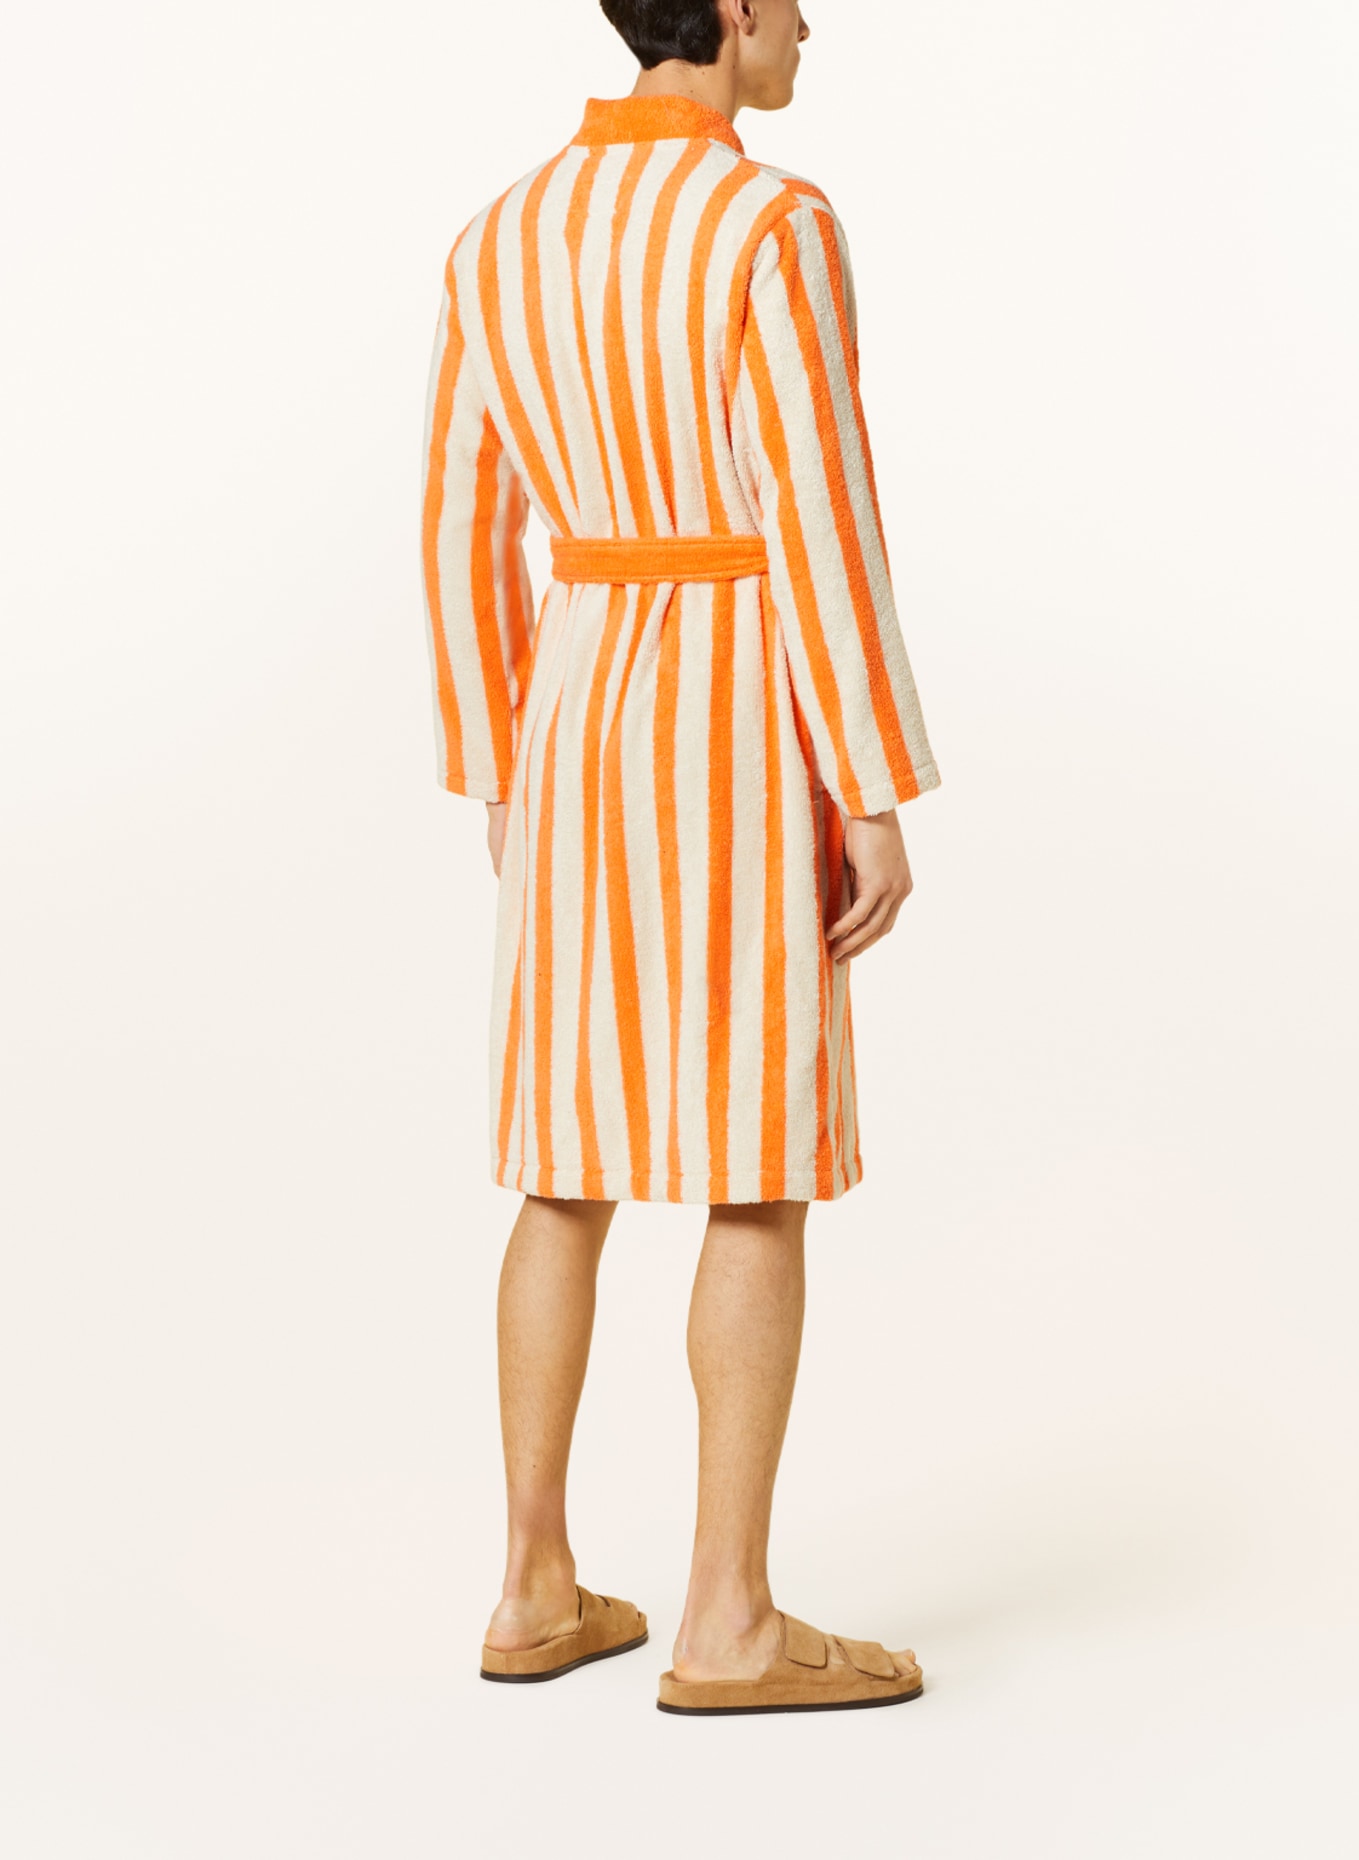 Marc O'Polo Women’s bathrobe, Color: ORANGE/ CREAM (Image 3)